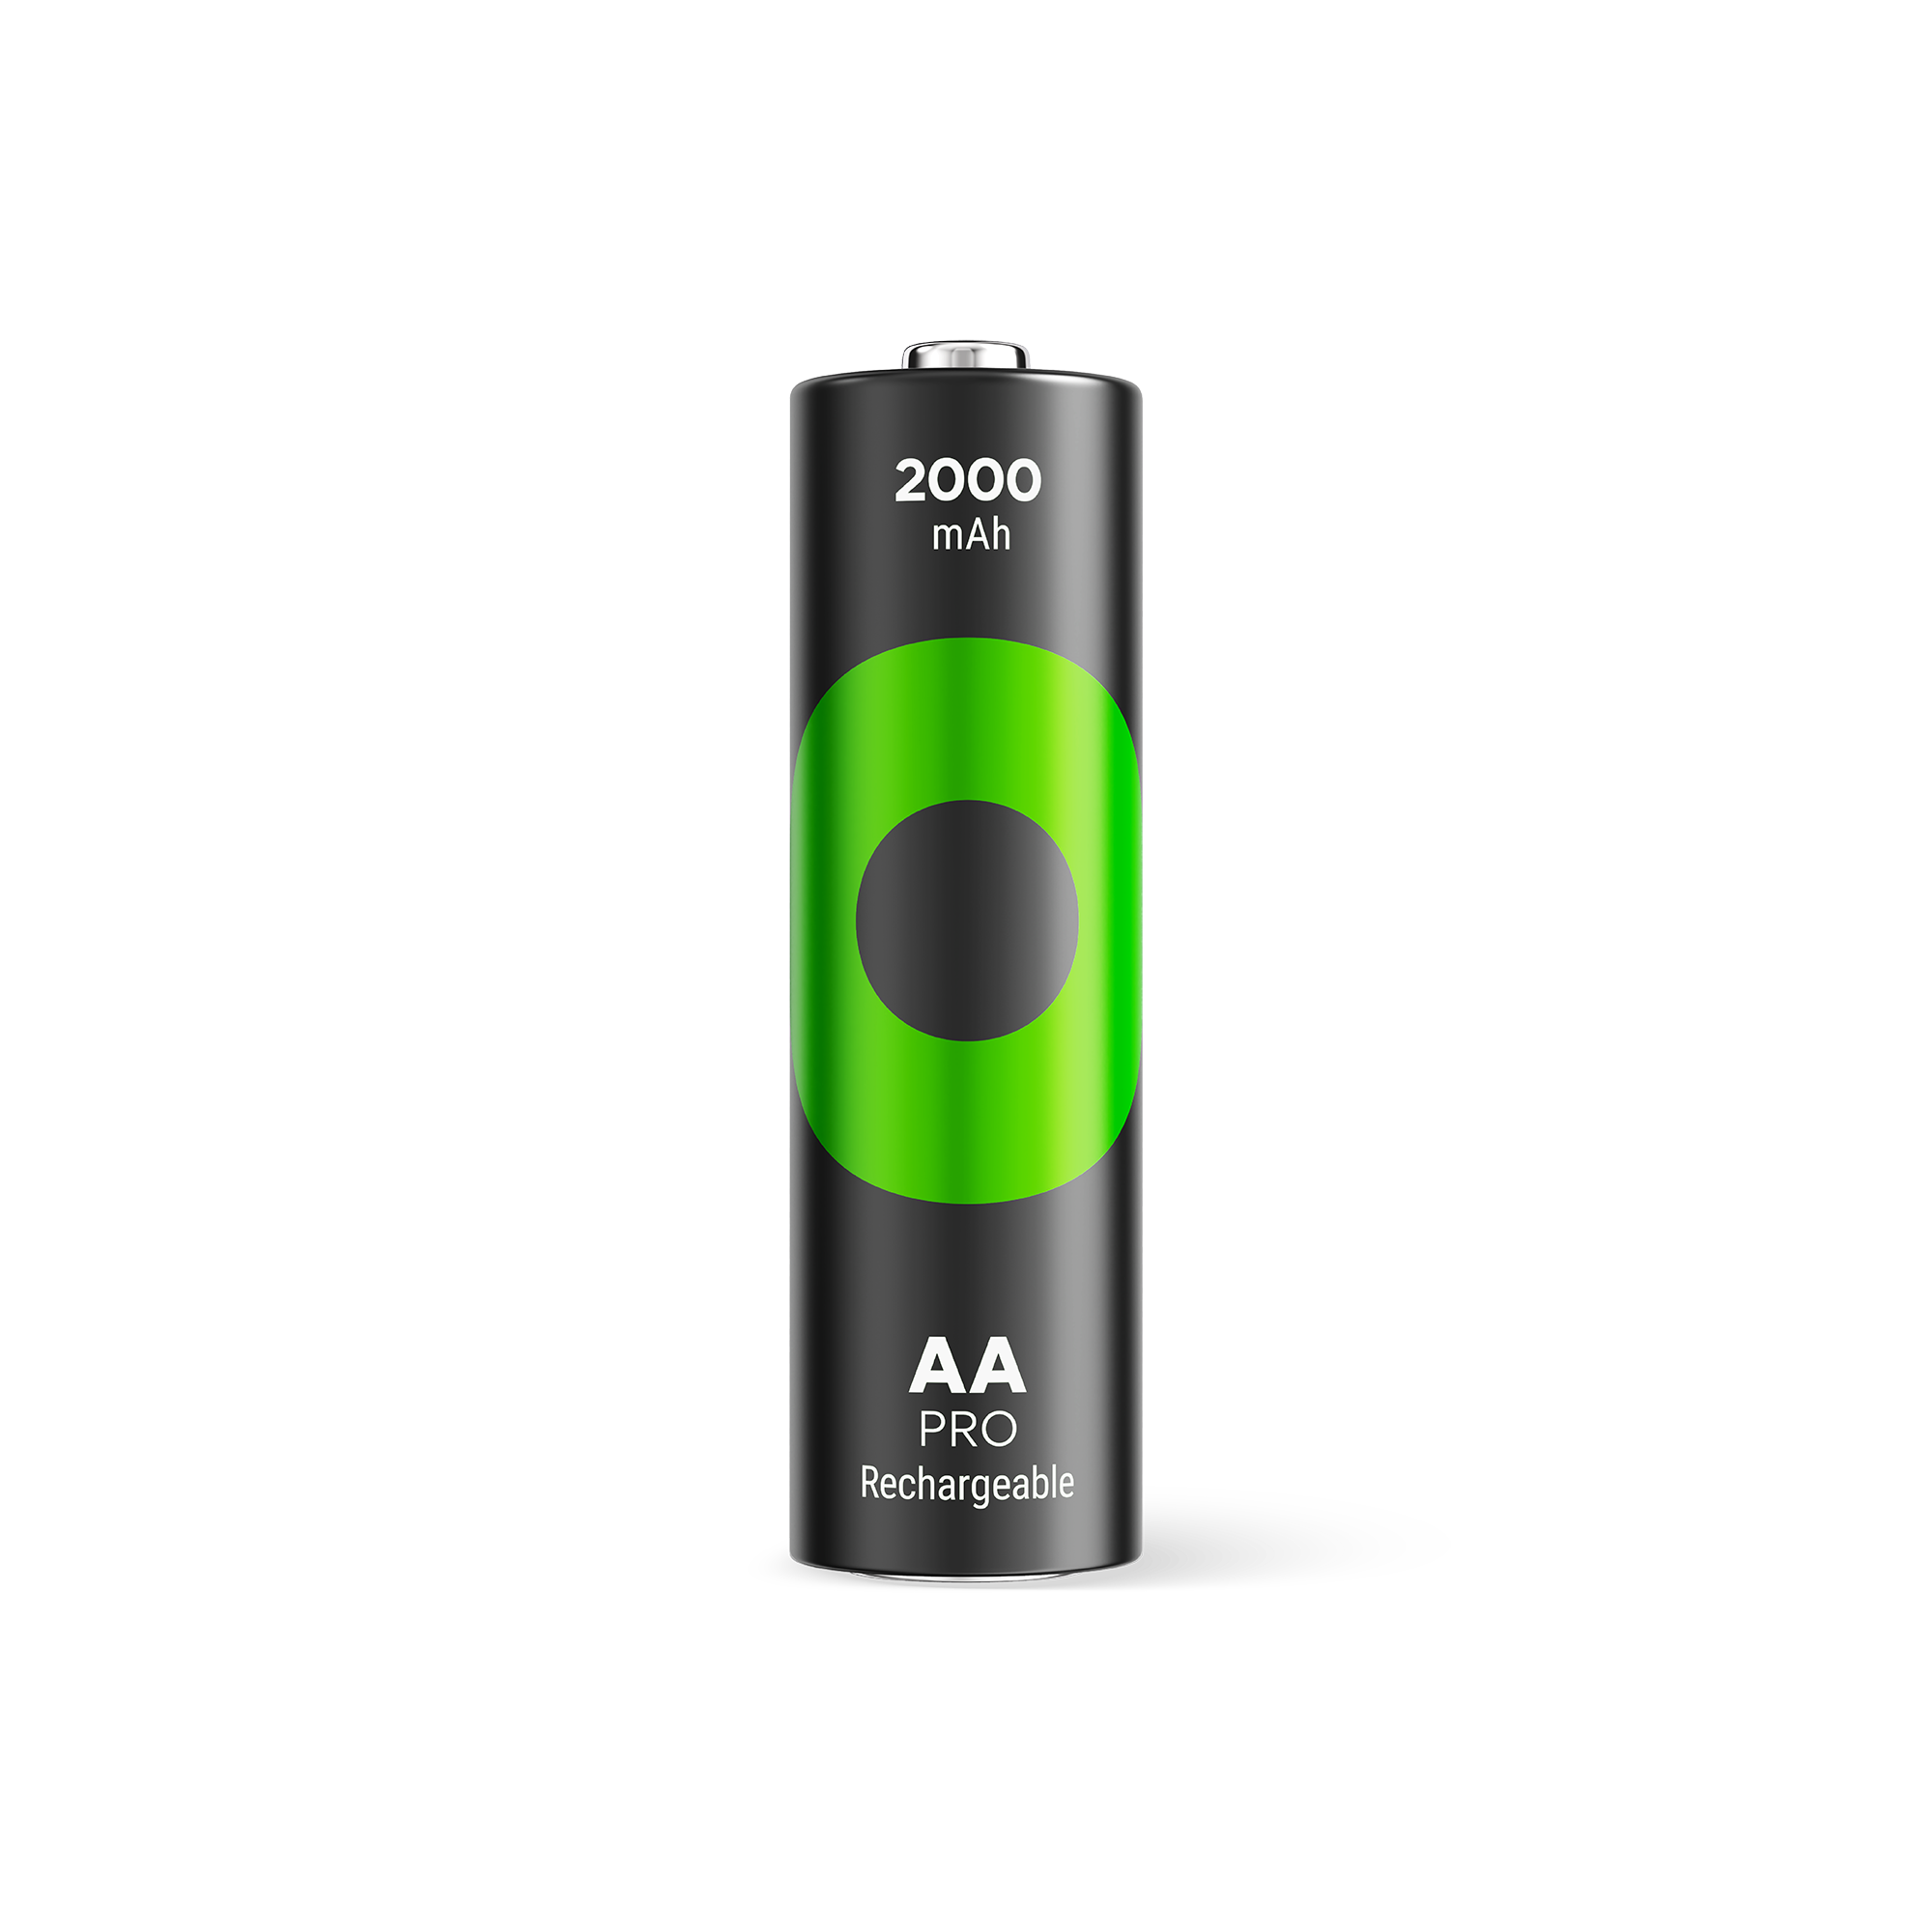 GP綠再專業充 AA 2000mAh充電池 (4粒裝)